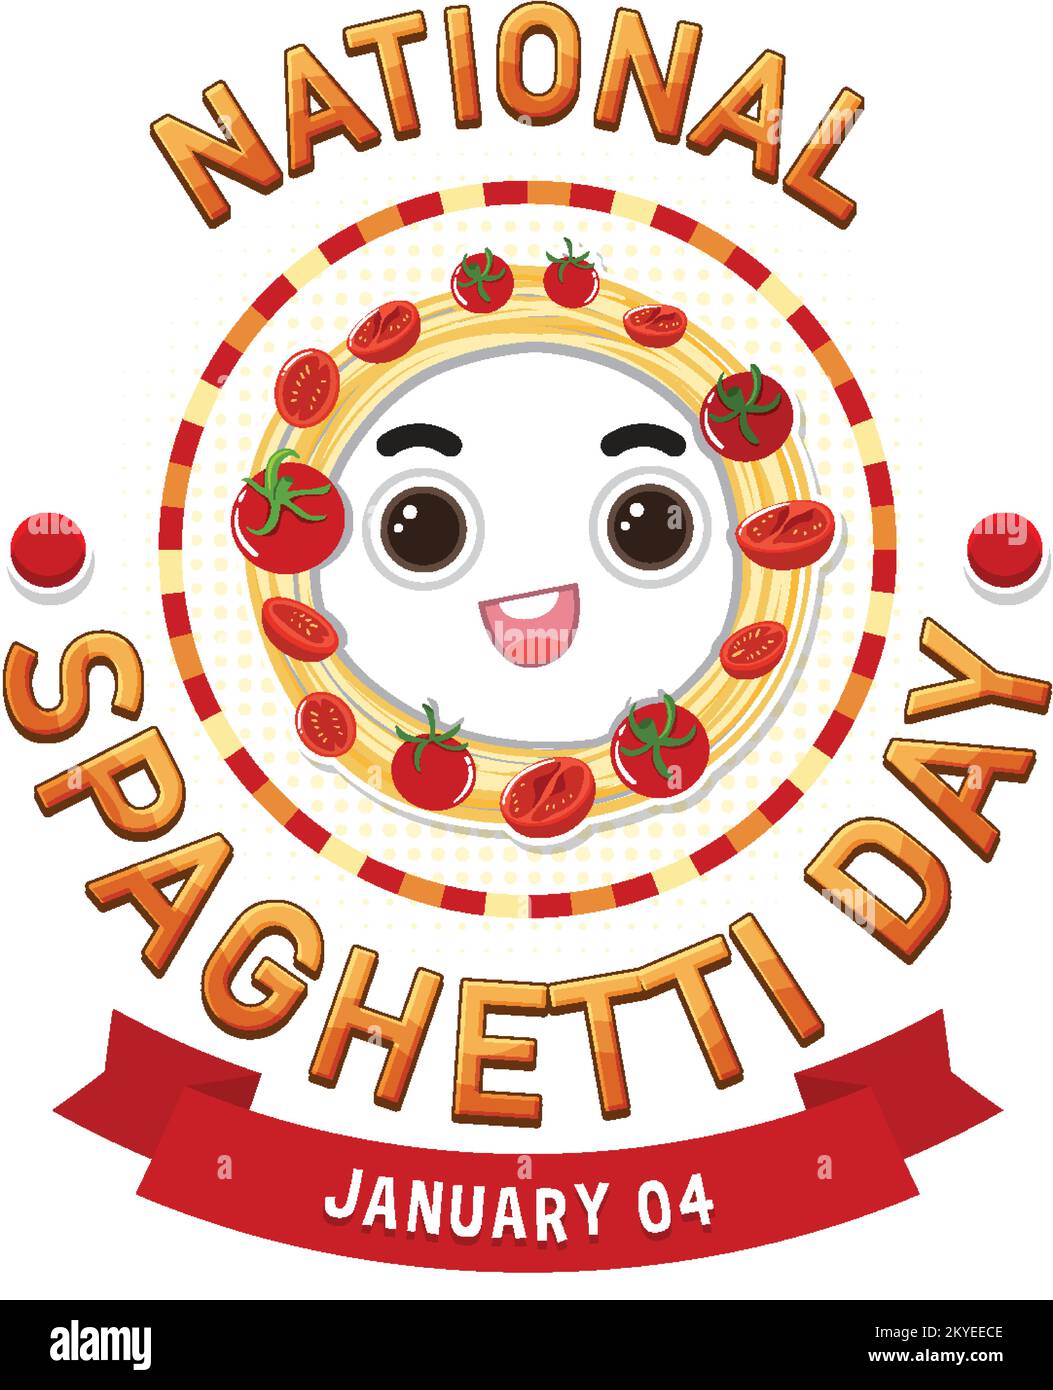 National Spaghetti Day Banner Design illustration Stock Vector